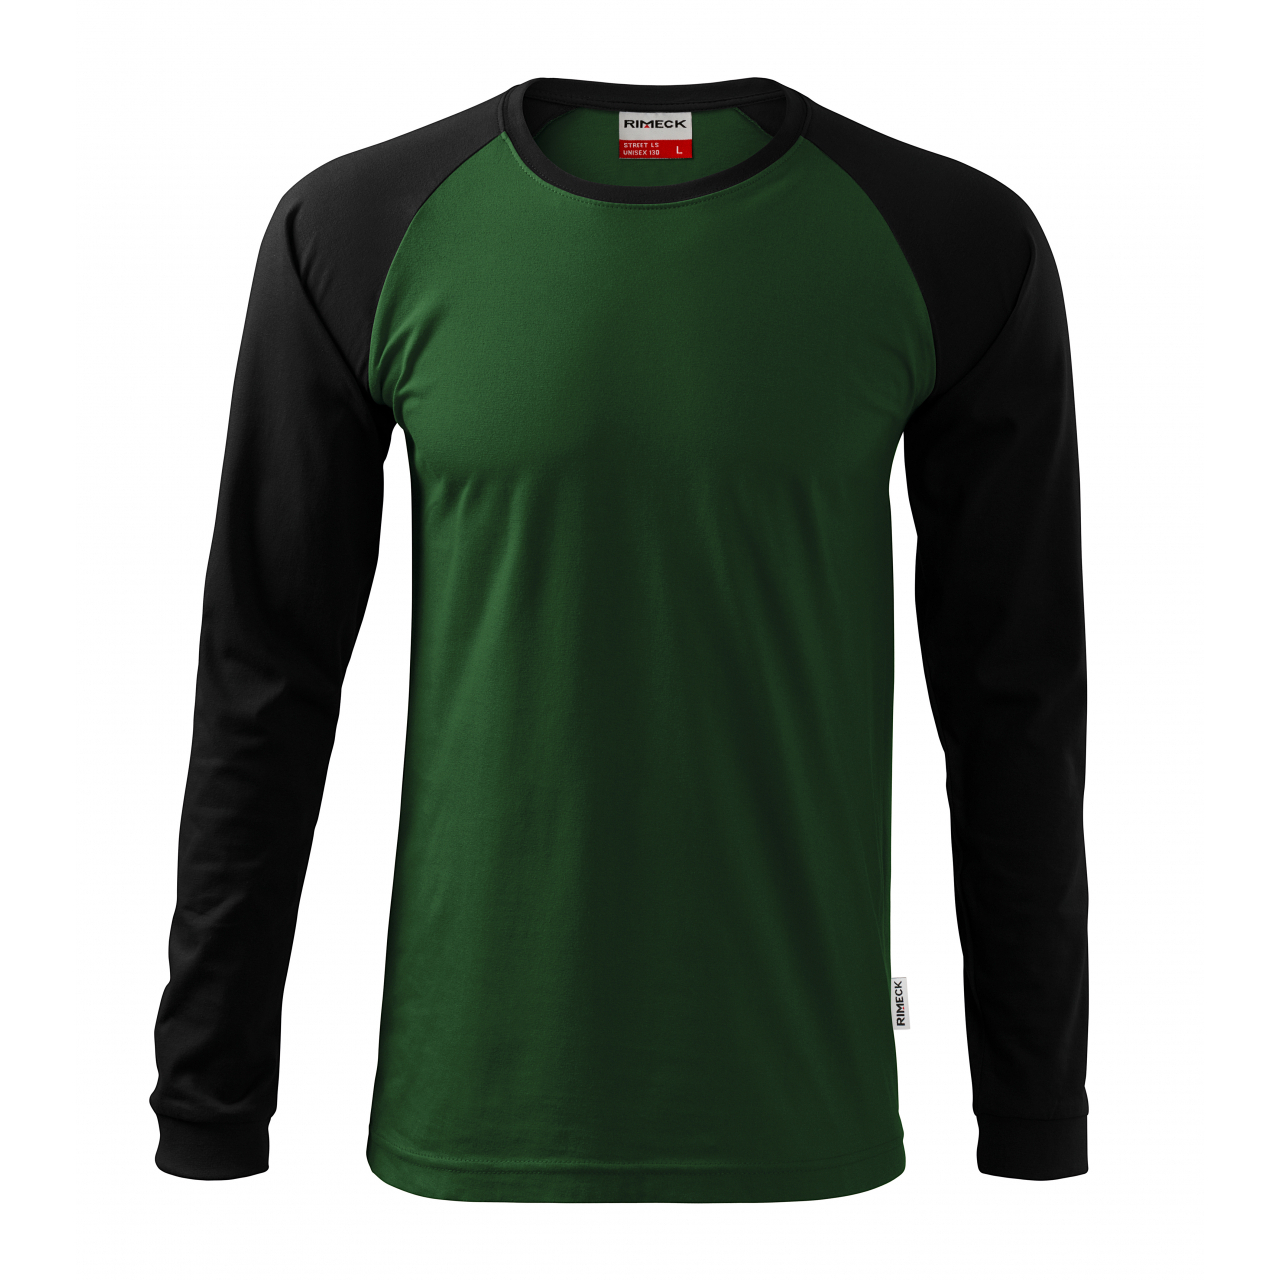 Tričko unisex Rimeck Street Long Sleeve - zelené-černé, L